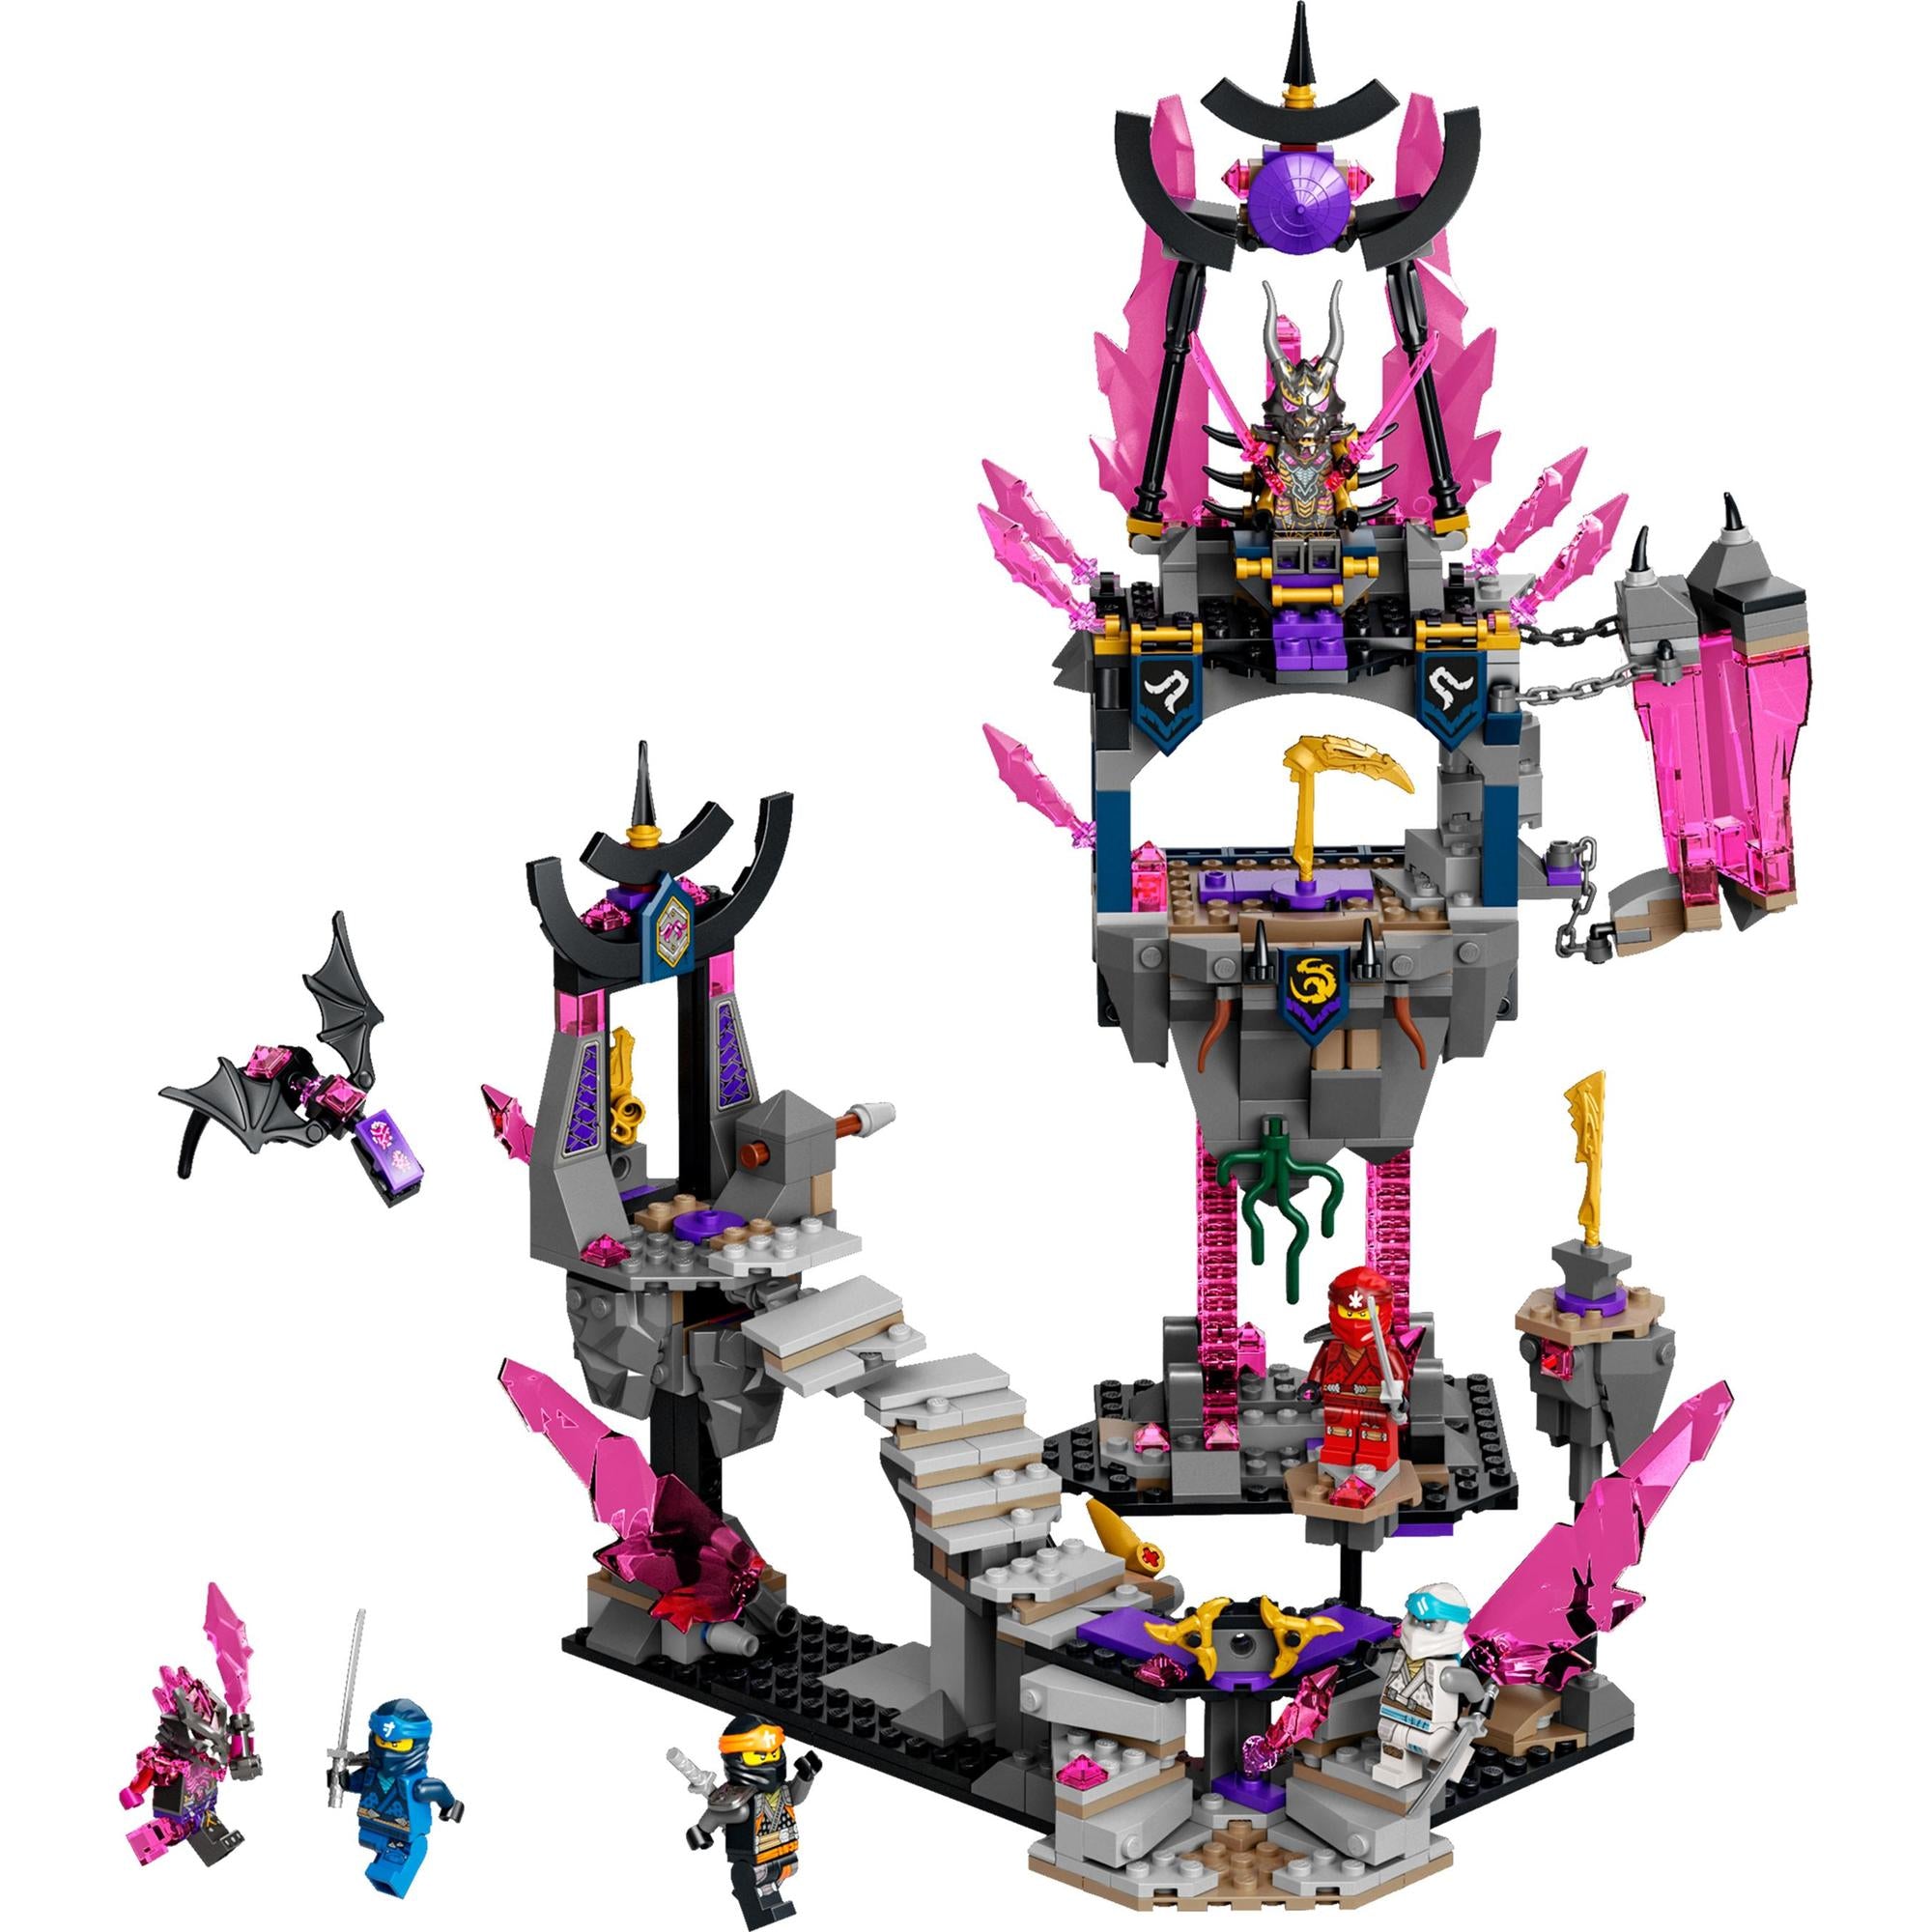 LEGO® | 71771 | Der Tempel des Kristallkönigs